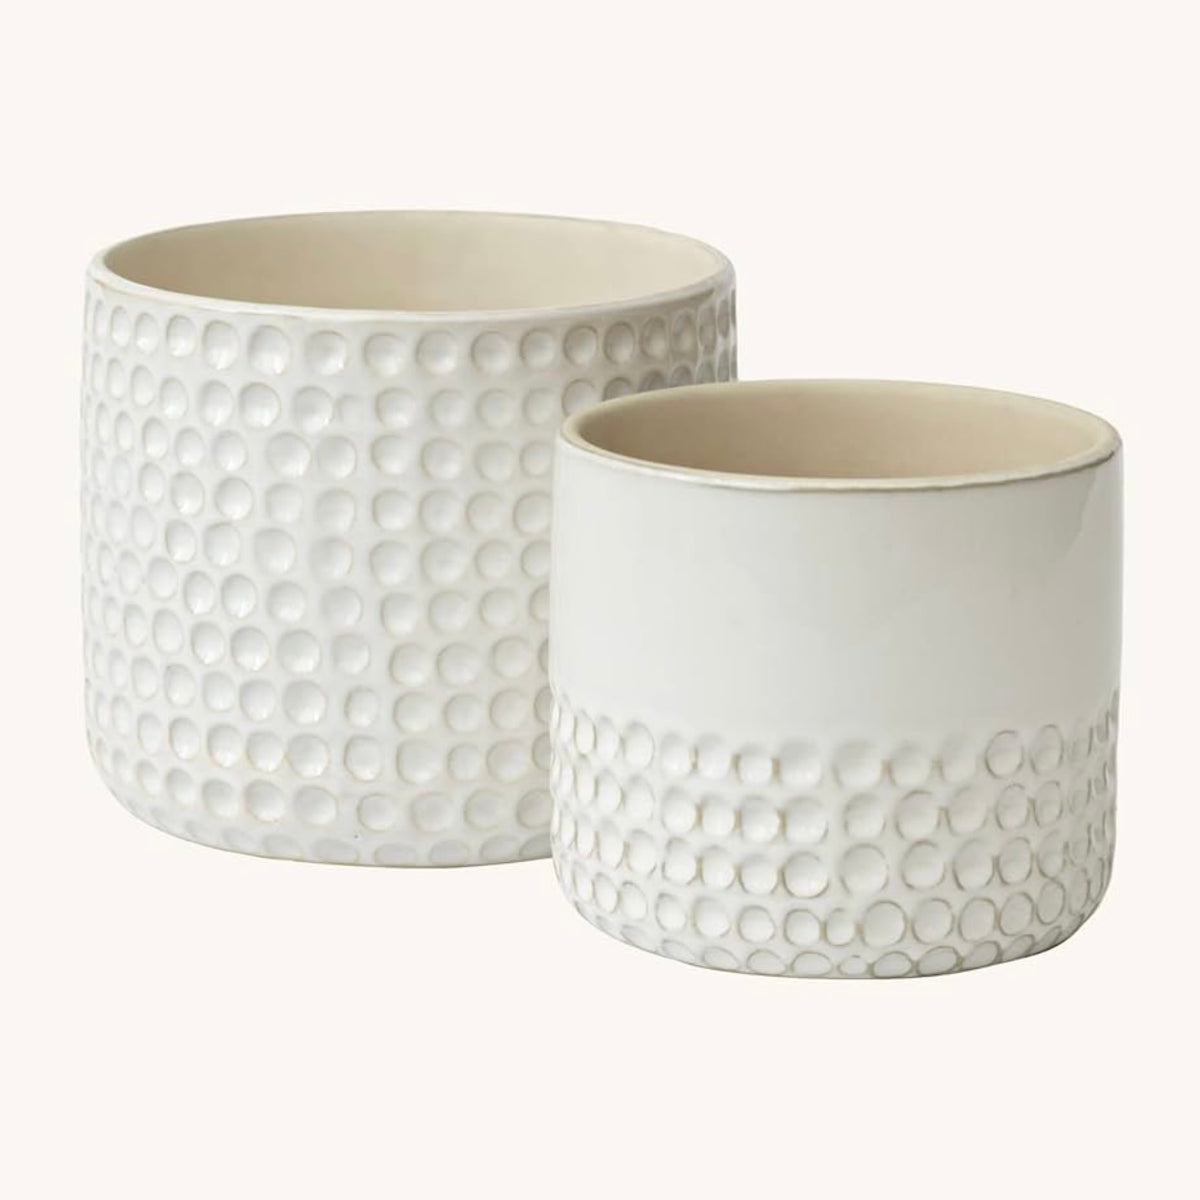 Maceteros cerámica blancos puntos